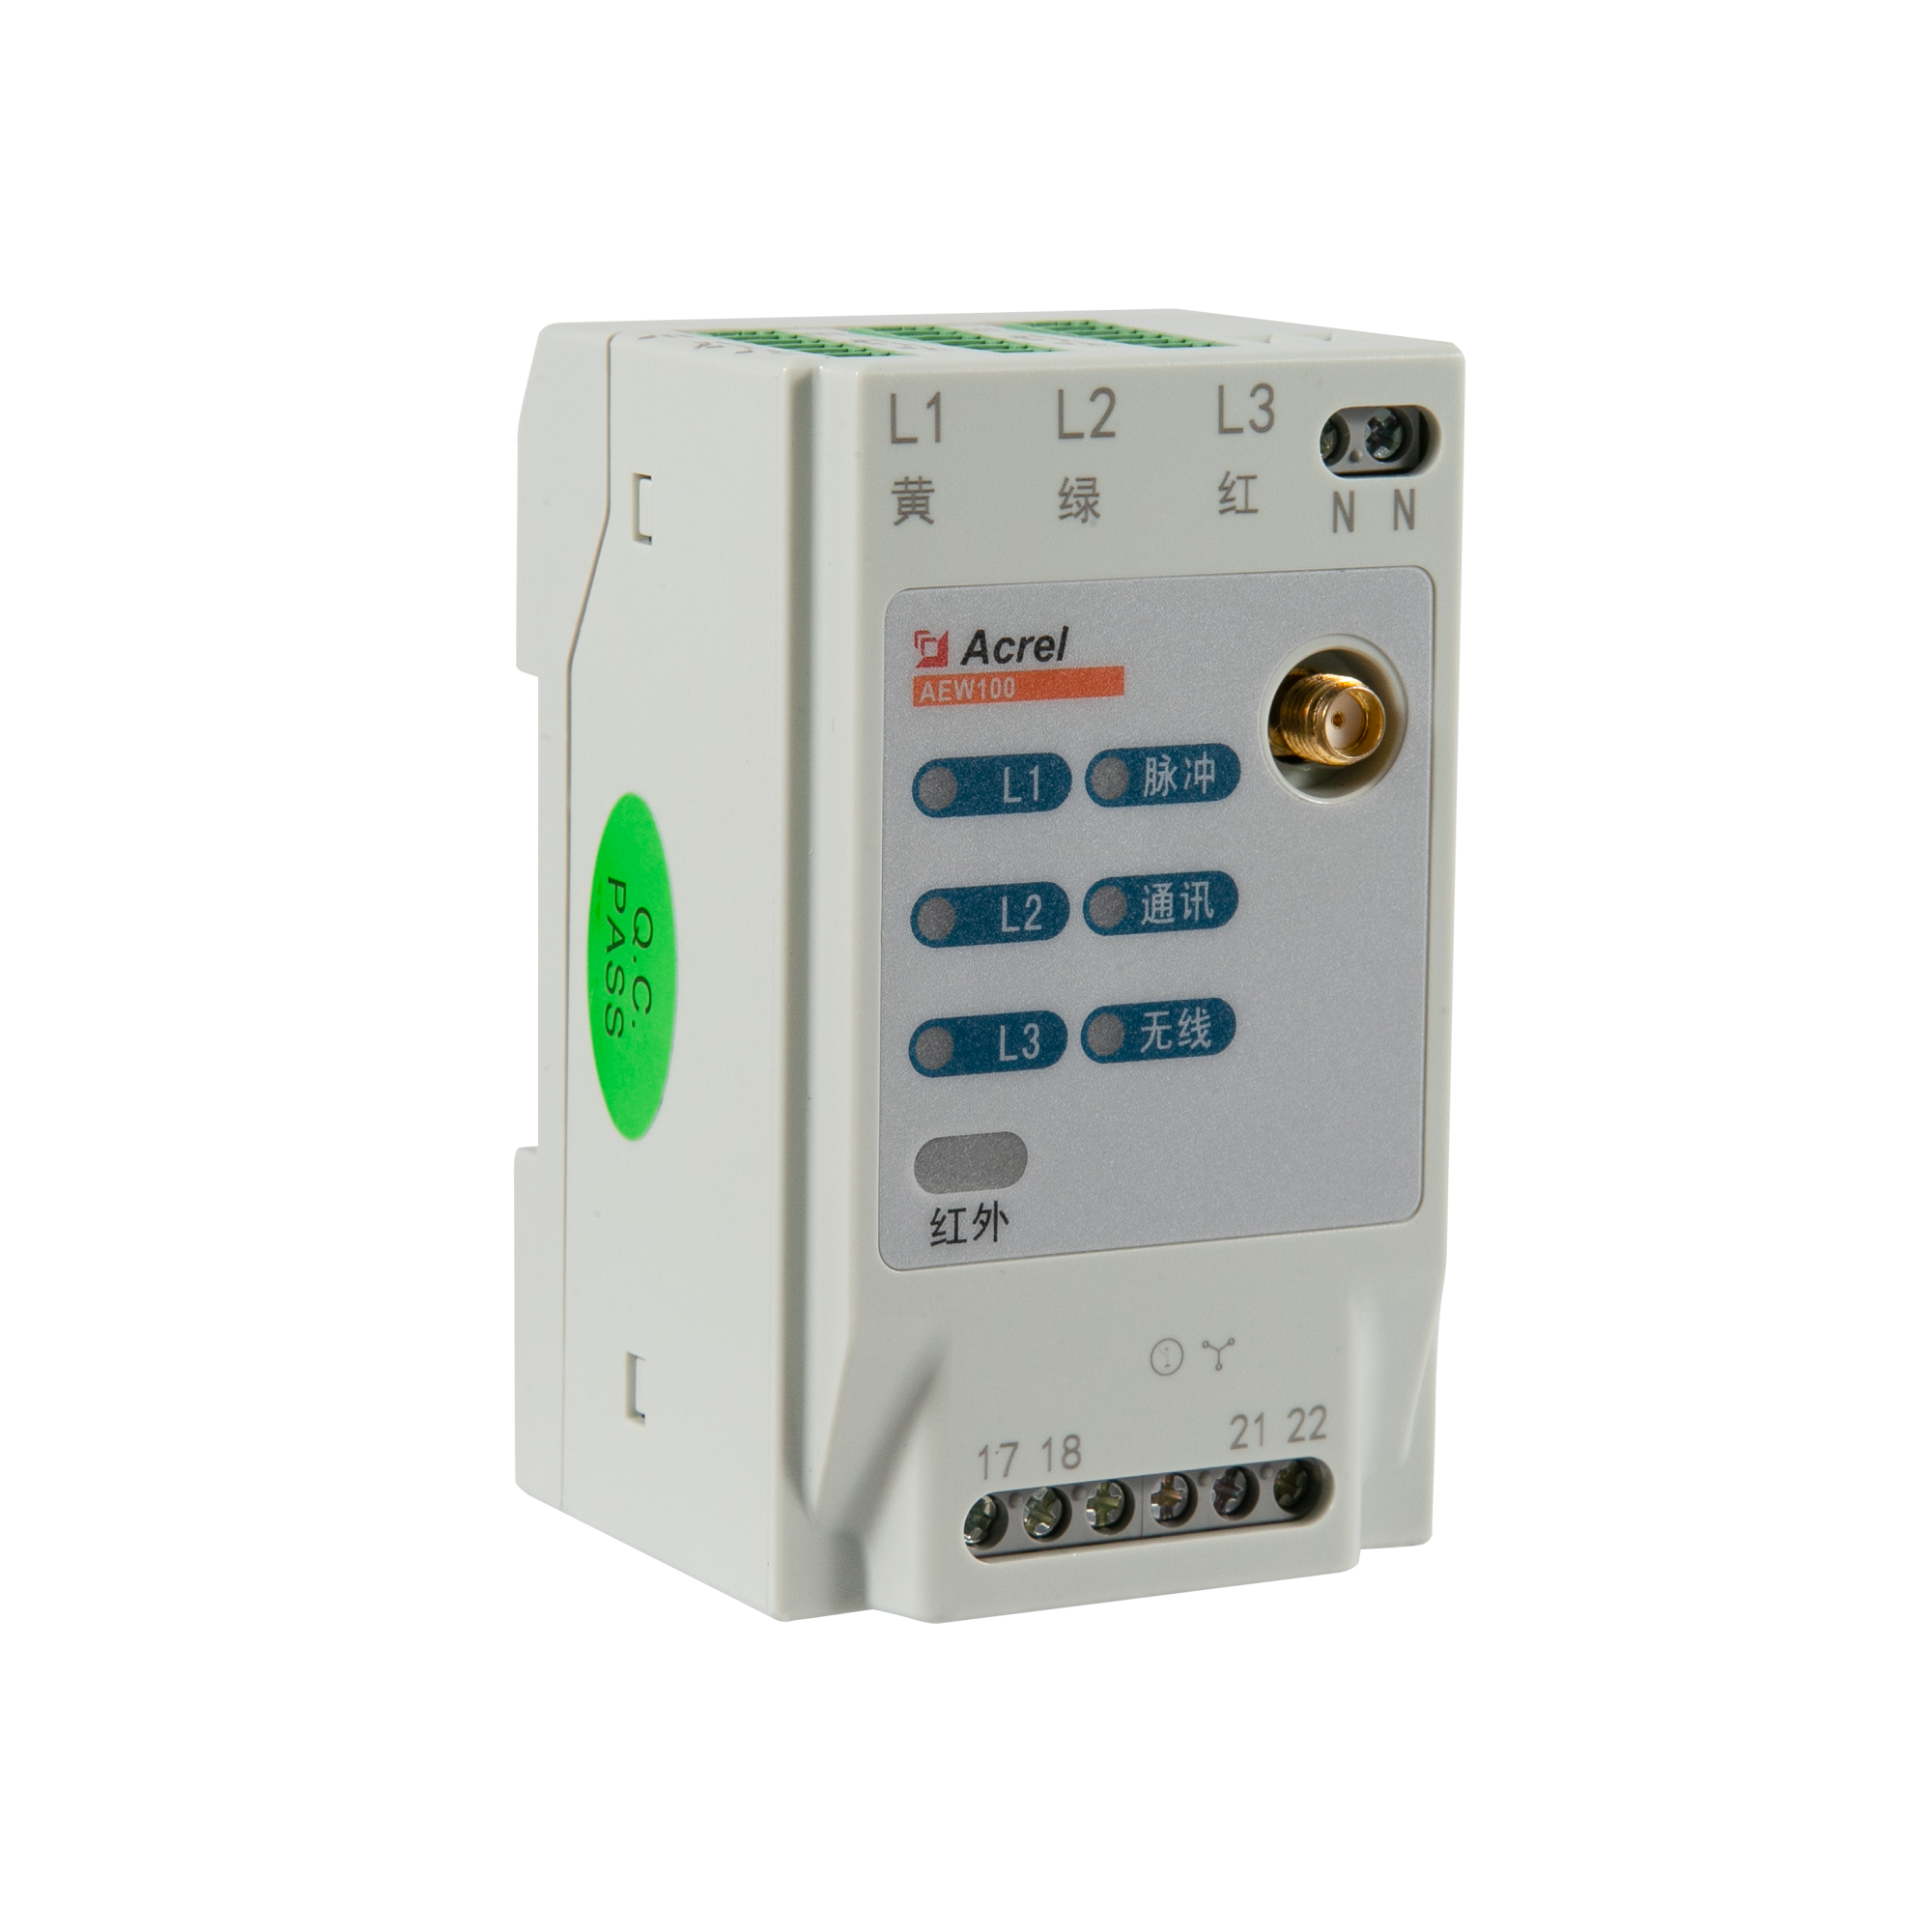 AEW100 Wireless Energy Meter